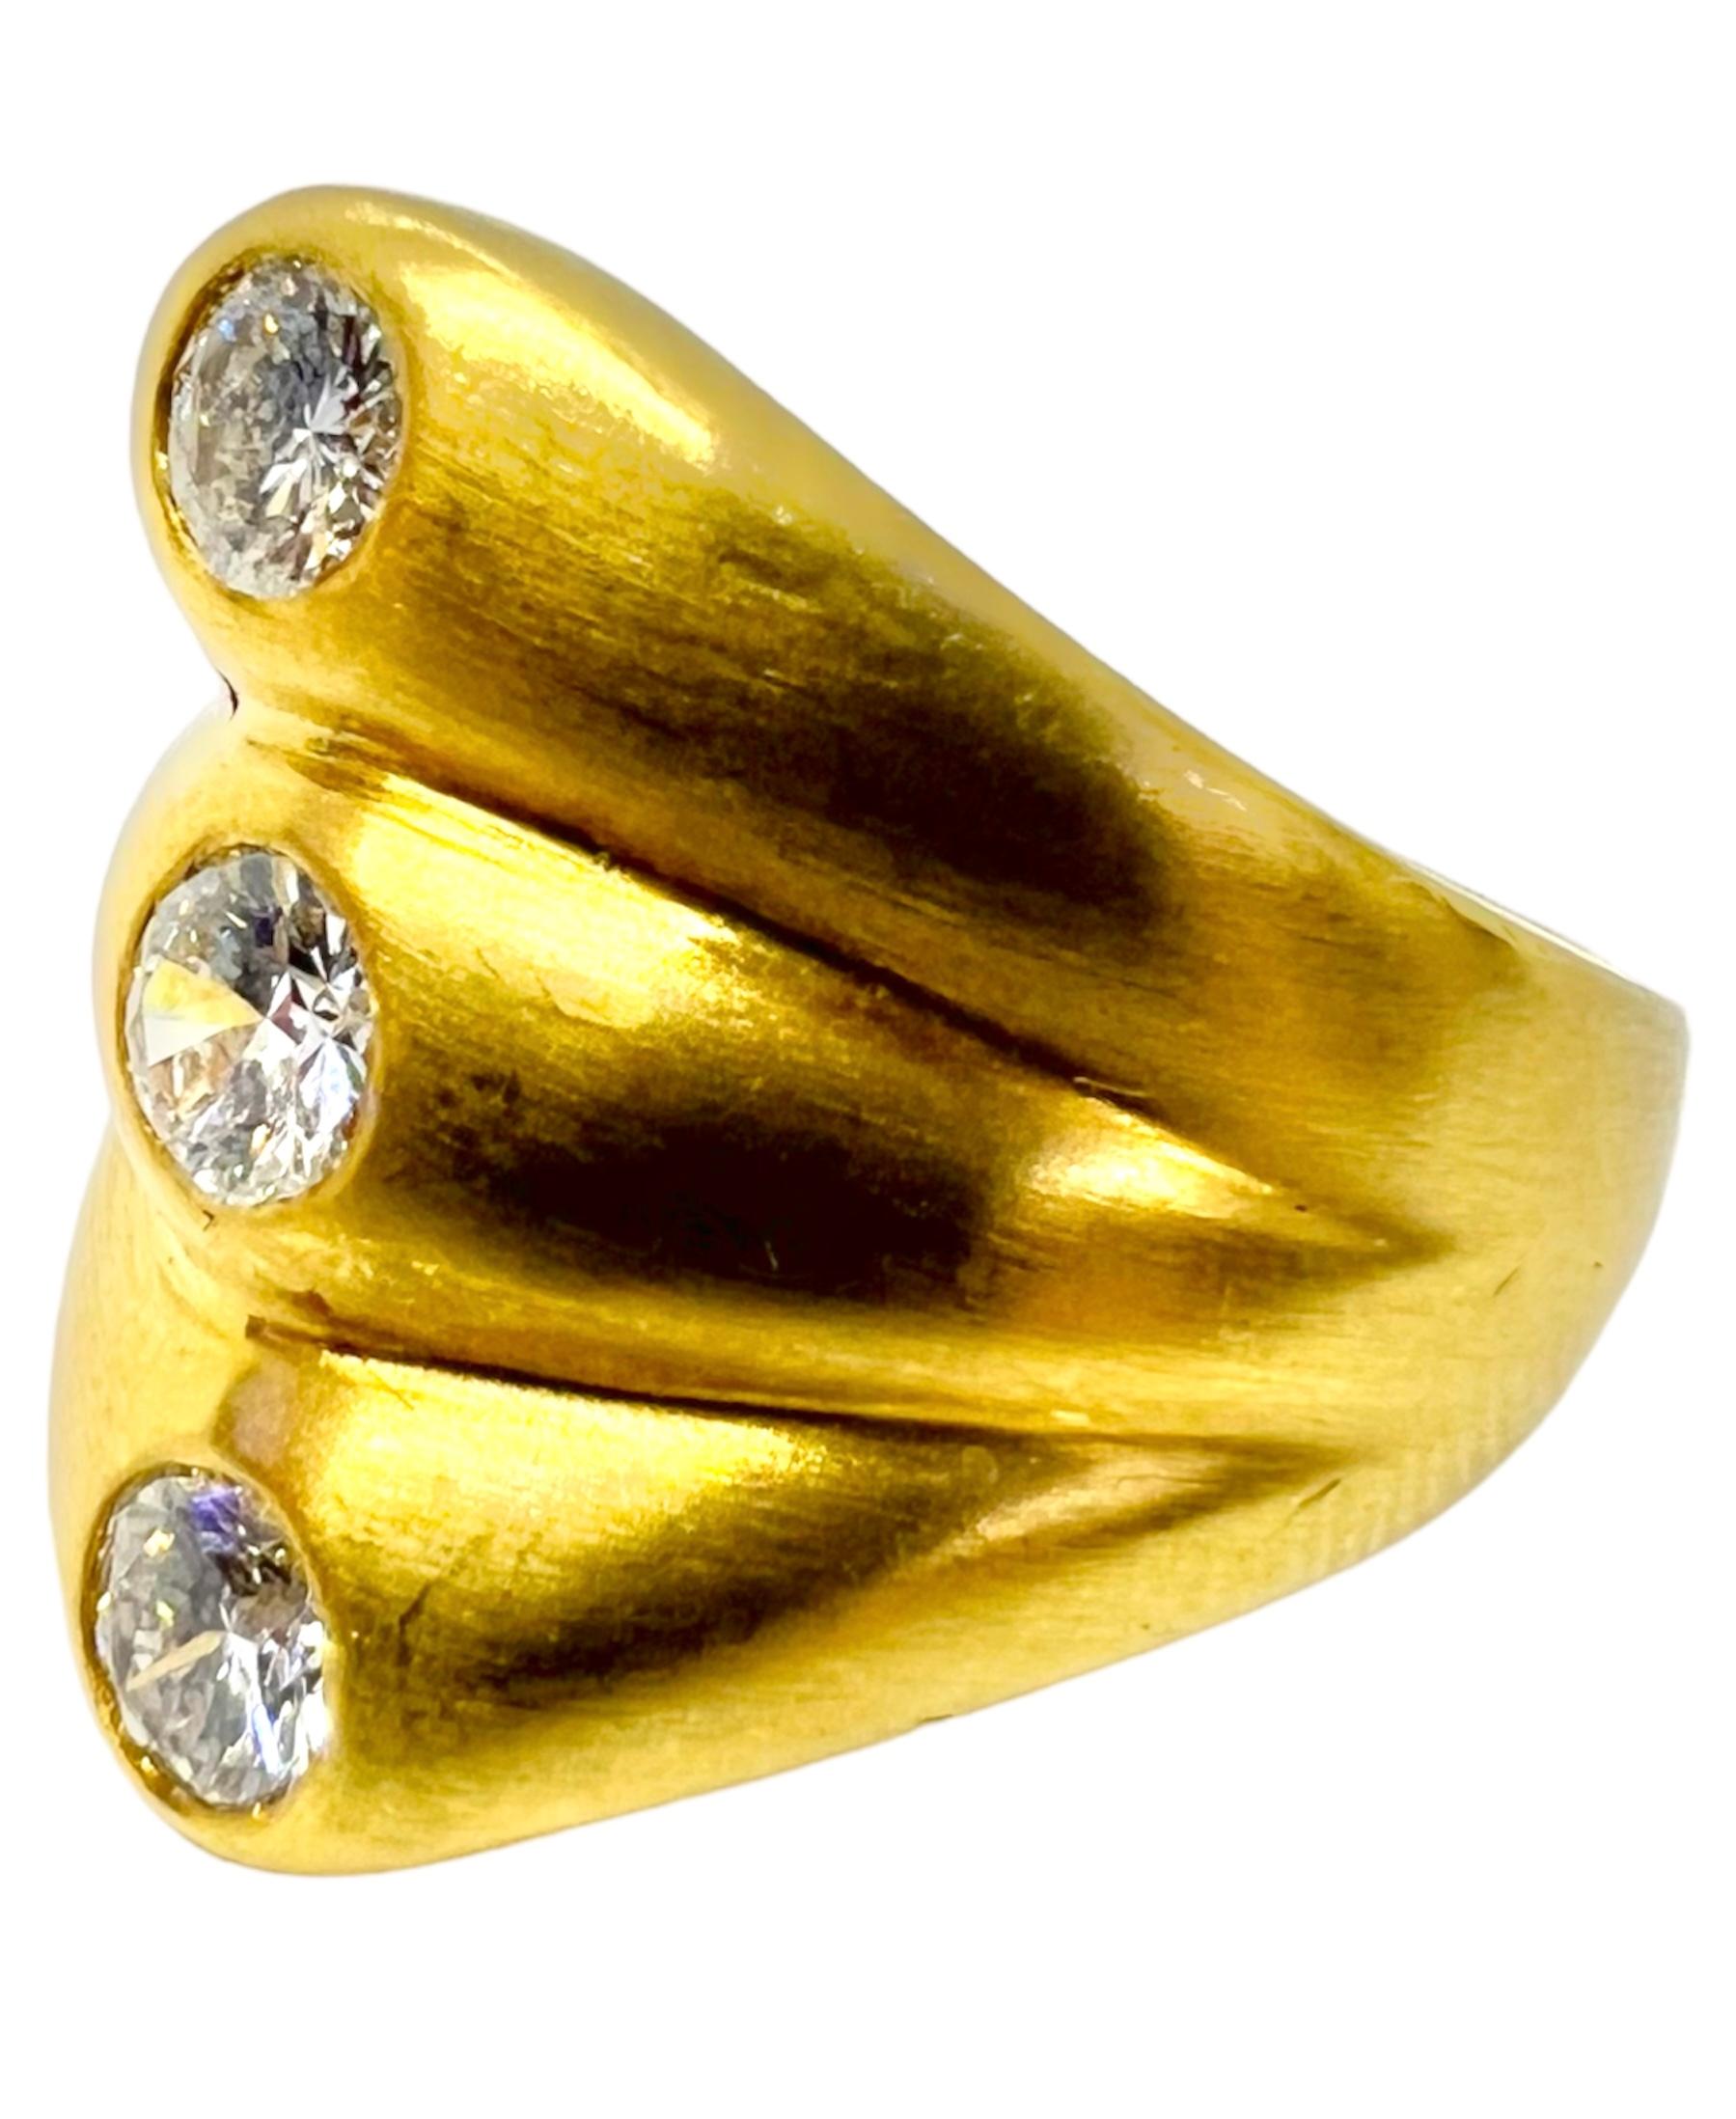 Ring aus 18 Karat Gelbgold mit 3 runden Diamanten.

Sophia D von Joseph Dardashti LTD ist seit 35 Jahren weltweit bekannt und lässt sich vom klassischen Art-Déco-Design inspirieren, das mit modernen Fertigungstechniken verschmilzt.  